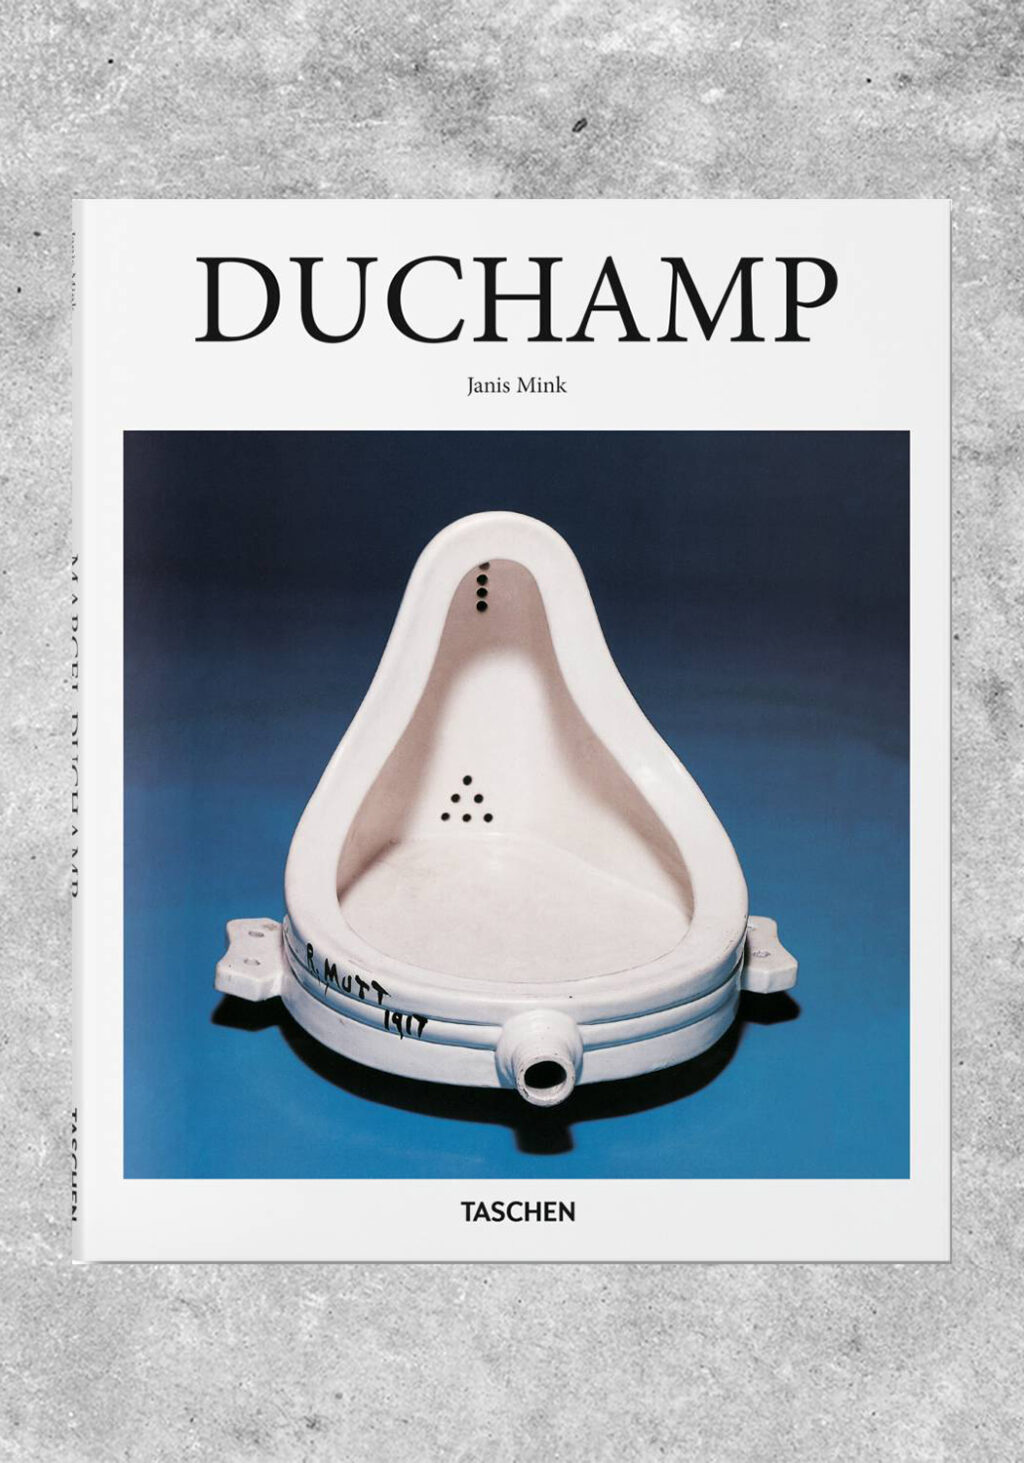 Taschen BA Series Duchamp